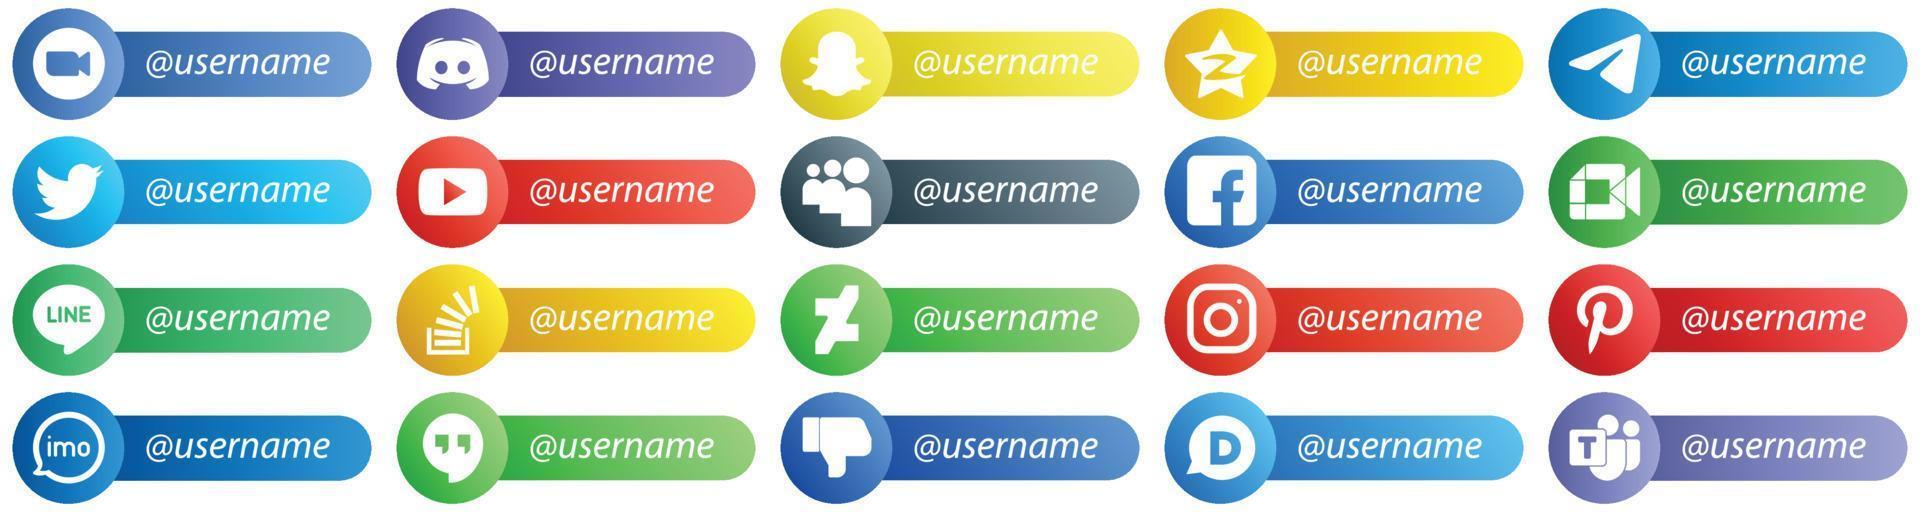 20 profesionales sígueme iconos de estilo de tarjeta de plataforma de red social como youtube. gorjeo. iconos de Snapchat y Telegram. único y de alta definición vector